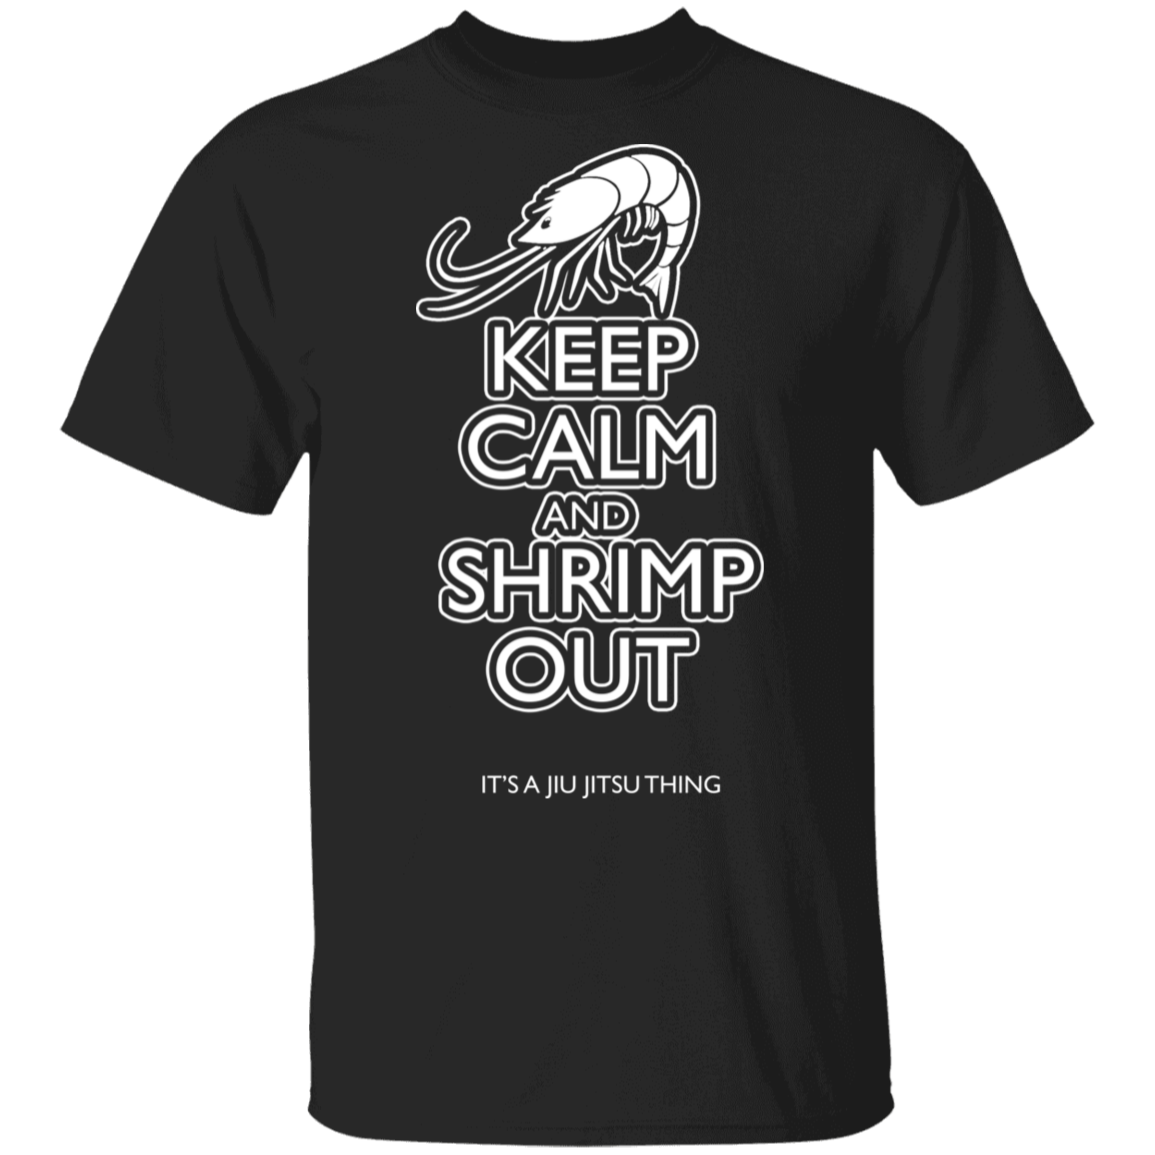 Artichoke Fight Gear Custom Design #6. KEEP CALM AND SHRIMP OUT. IT'S A JIU JITSU THING. Men's 100% Cotton T-Shirt